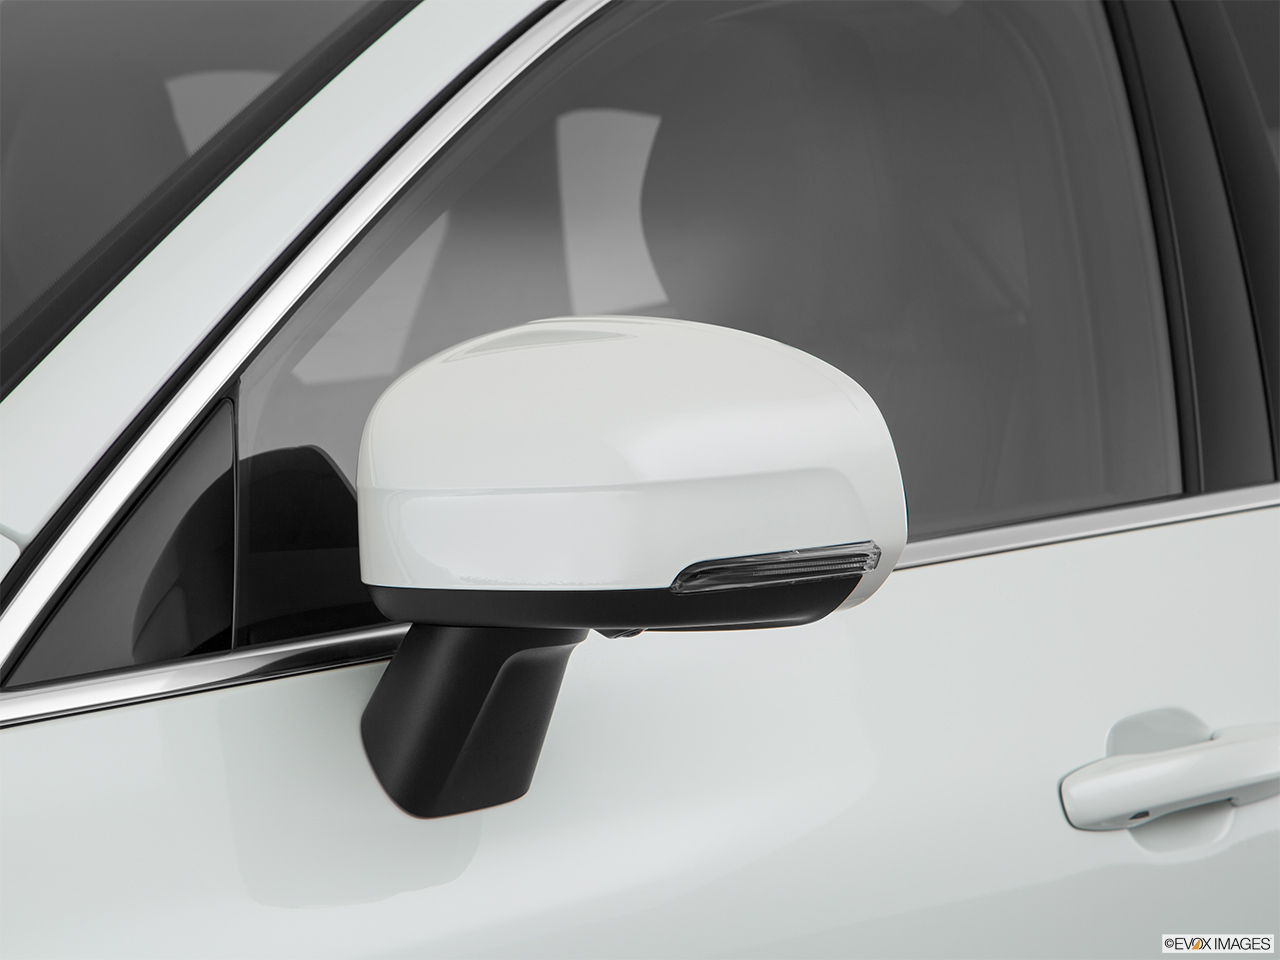 2019 Volvo XC60 T8 Inscription eAWD Plug-in Hybrid Driver's side mirror, 3_4 rear 